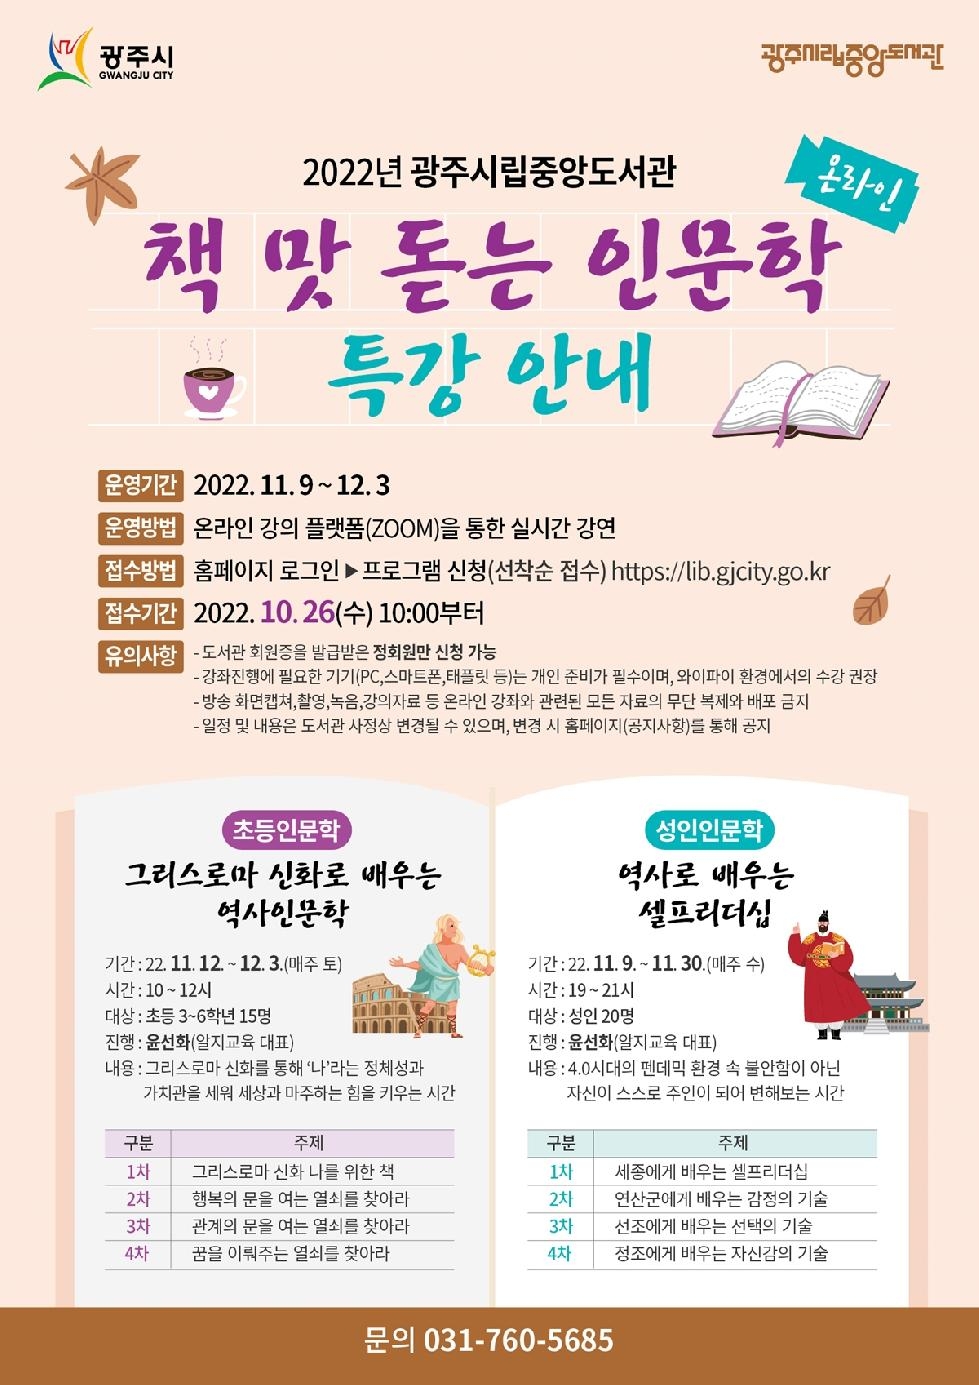 광주시립중앙도서관, ‘책 맛 돋는 인문학’ 특강 운영